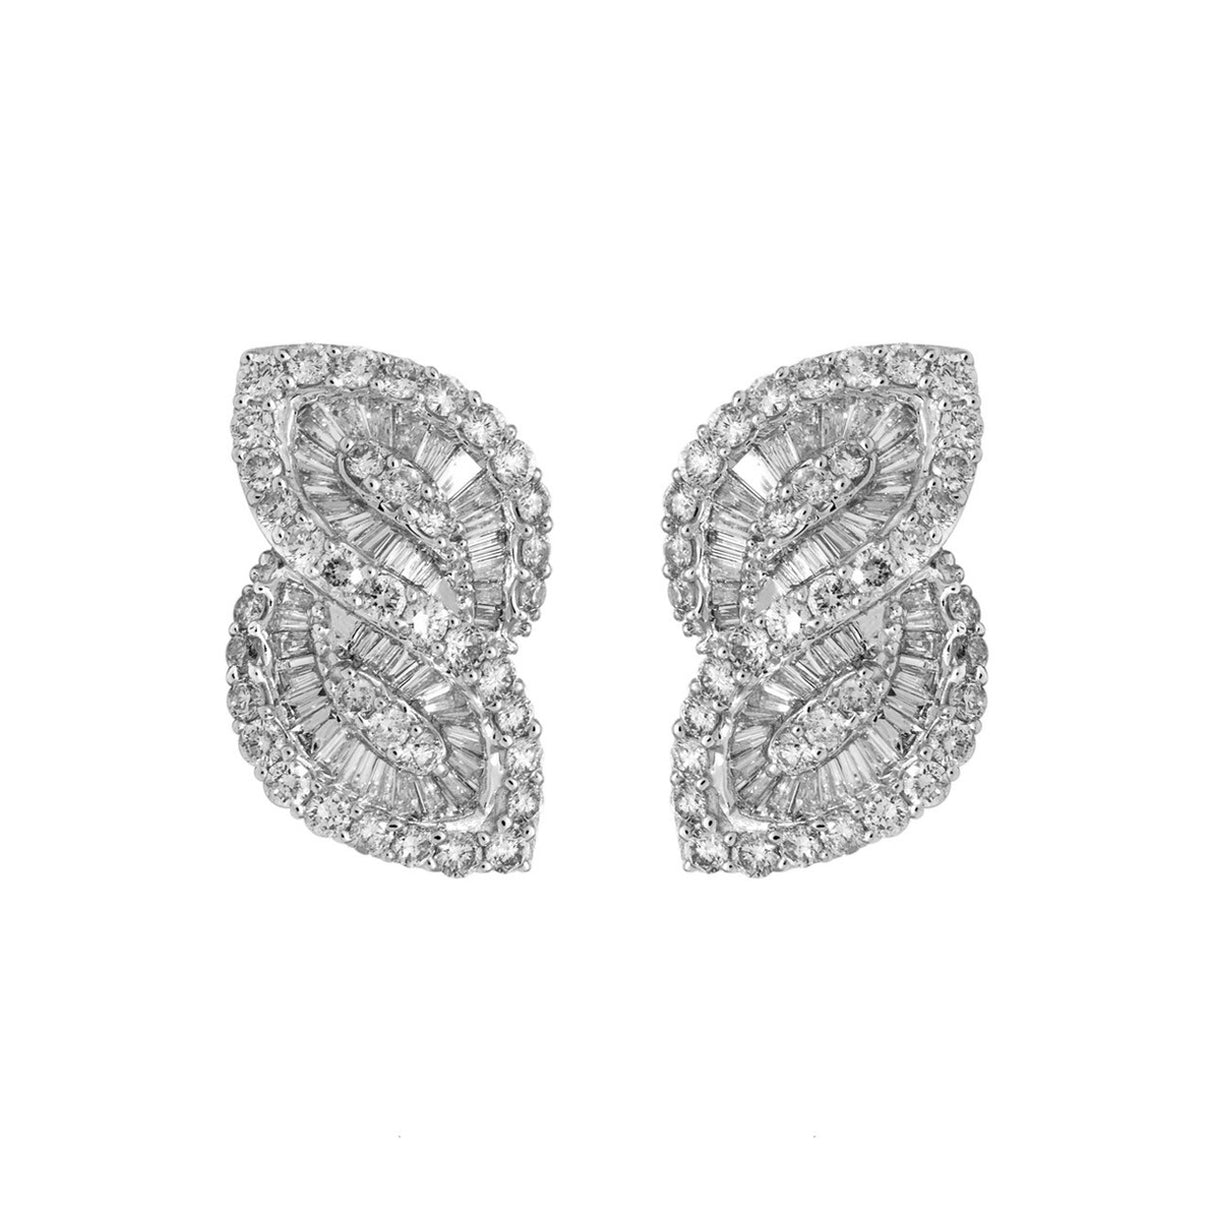 18K White Gold 3.08 Carat Diamond Baguette Earrings